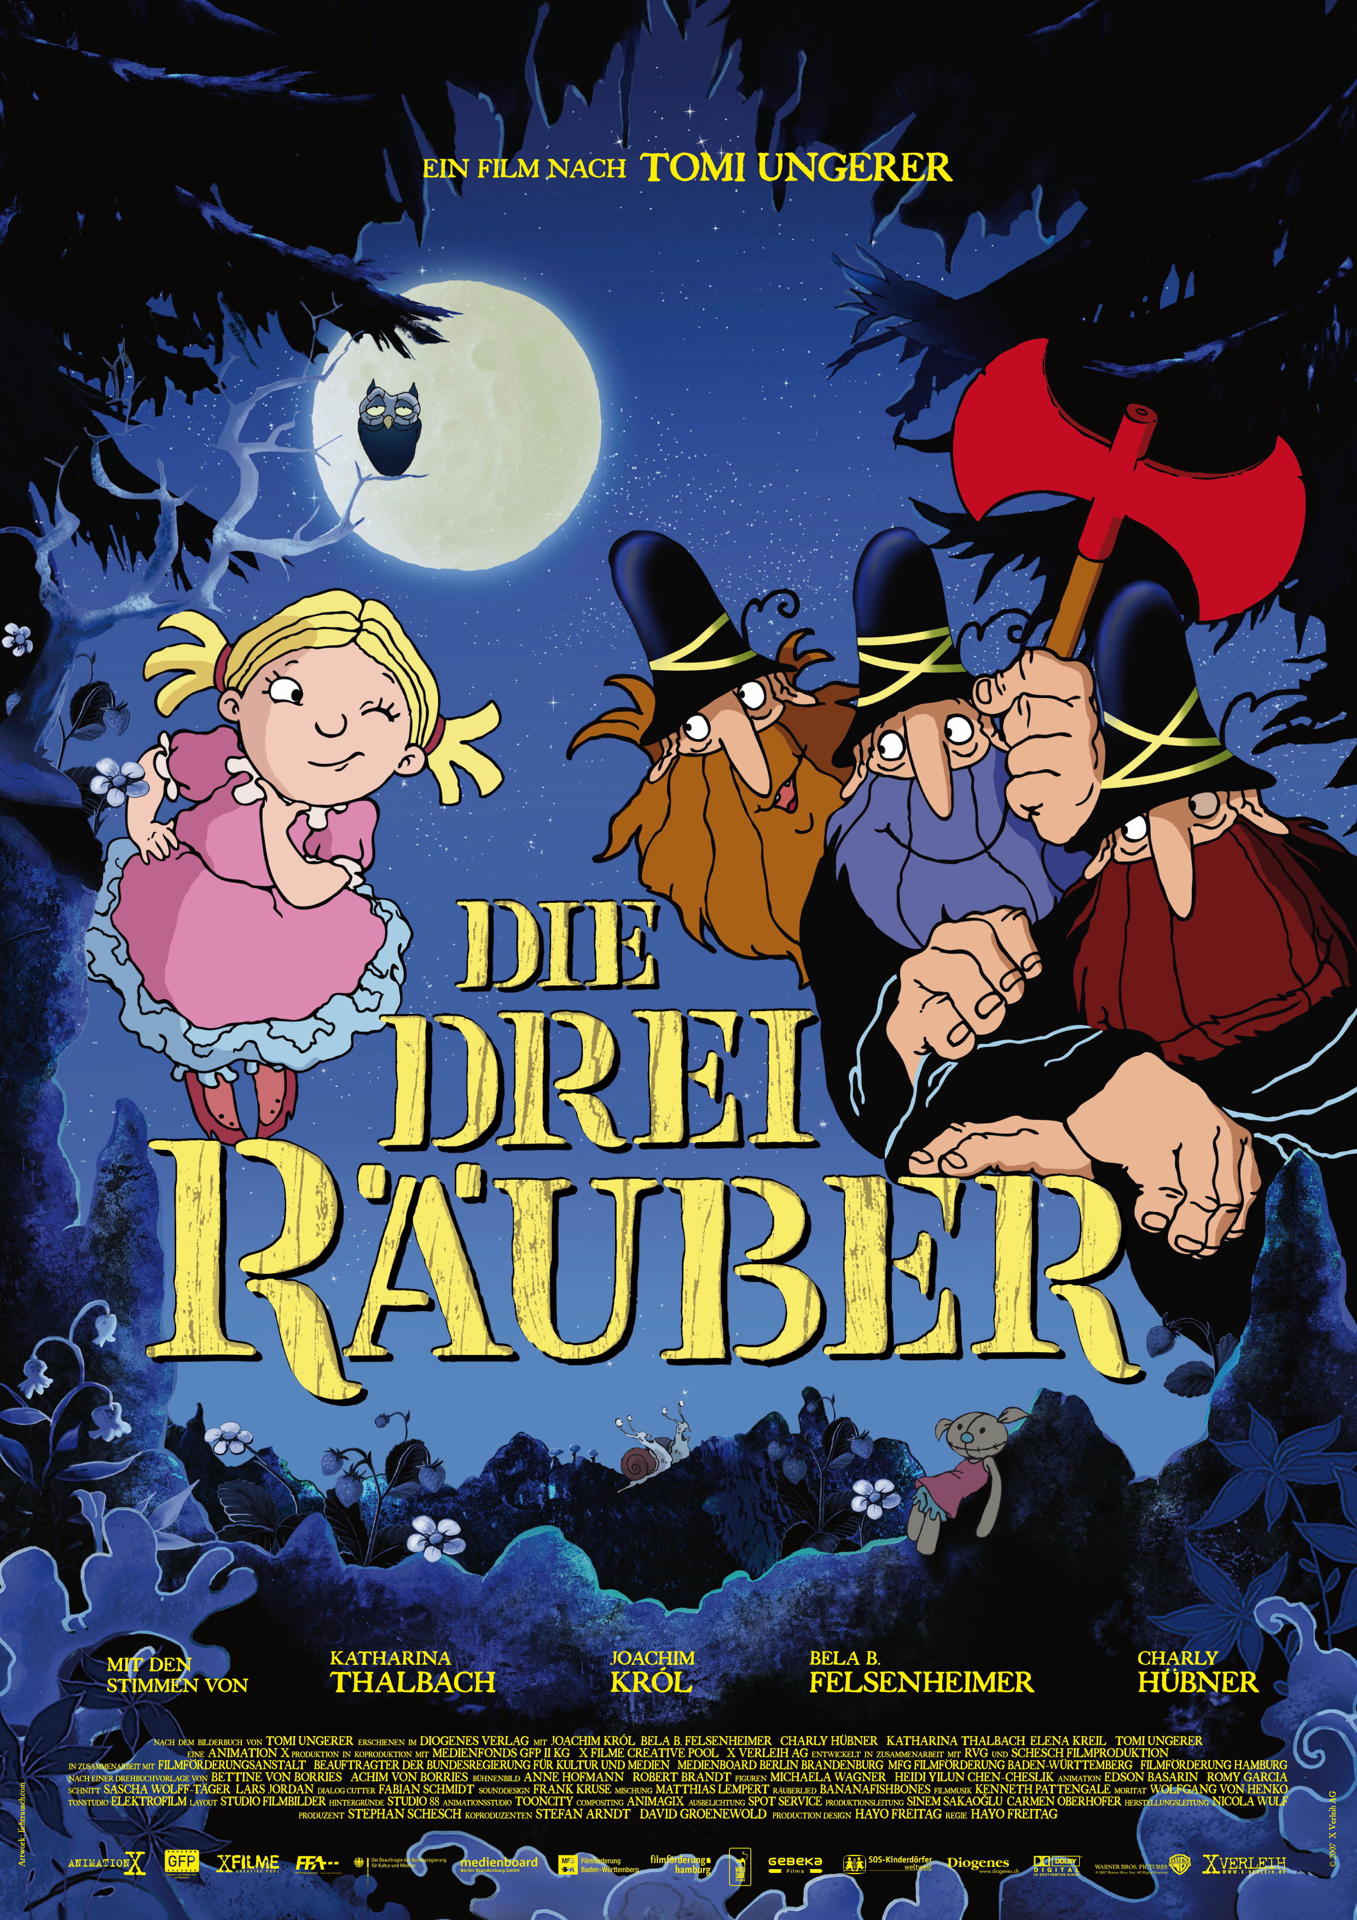 Massando 在 Twitter 上 Poo1007 これって07年にドイツでアニメ映画になっているようです 残念ながら未見なのですが 予告編 T Co Yzxlknjunx すてきな三にんぐみ Die Drei Rauber T Co F06zavlwoy Twitter